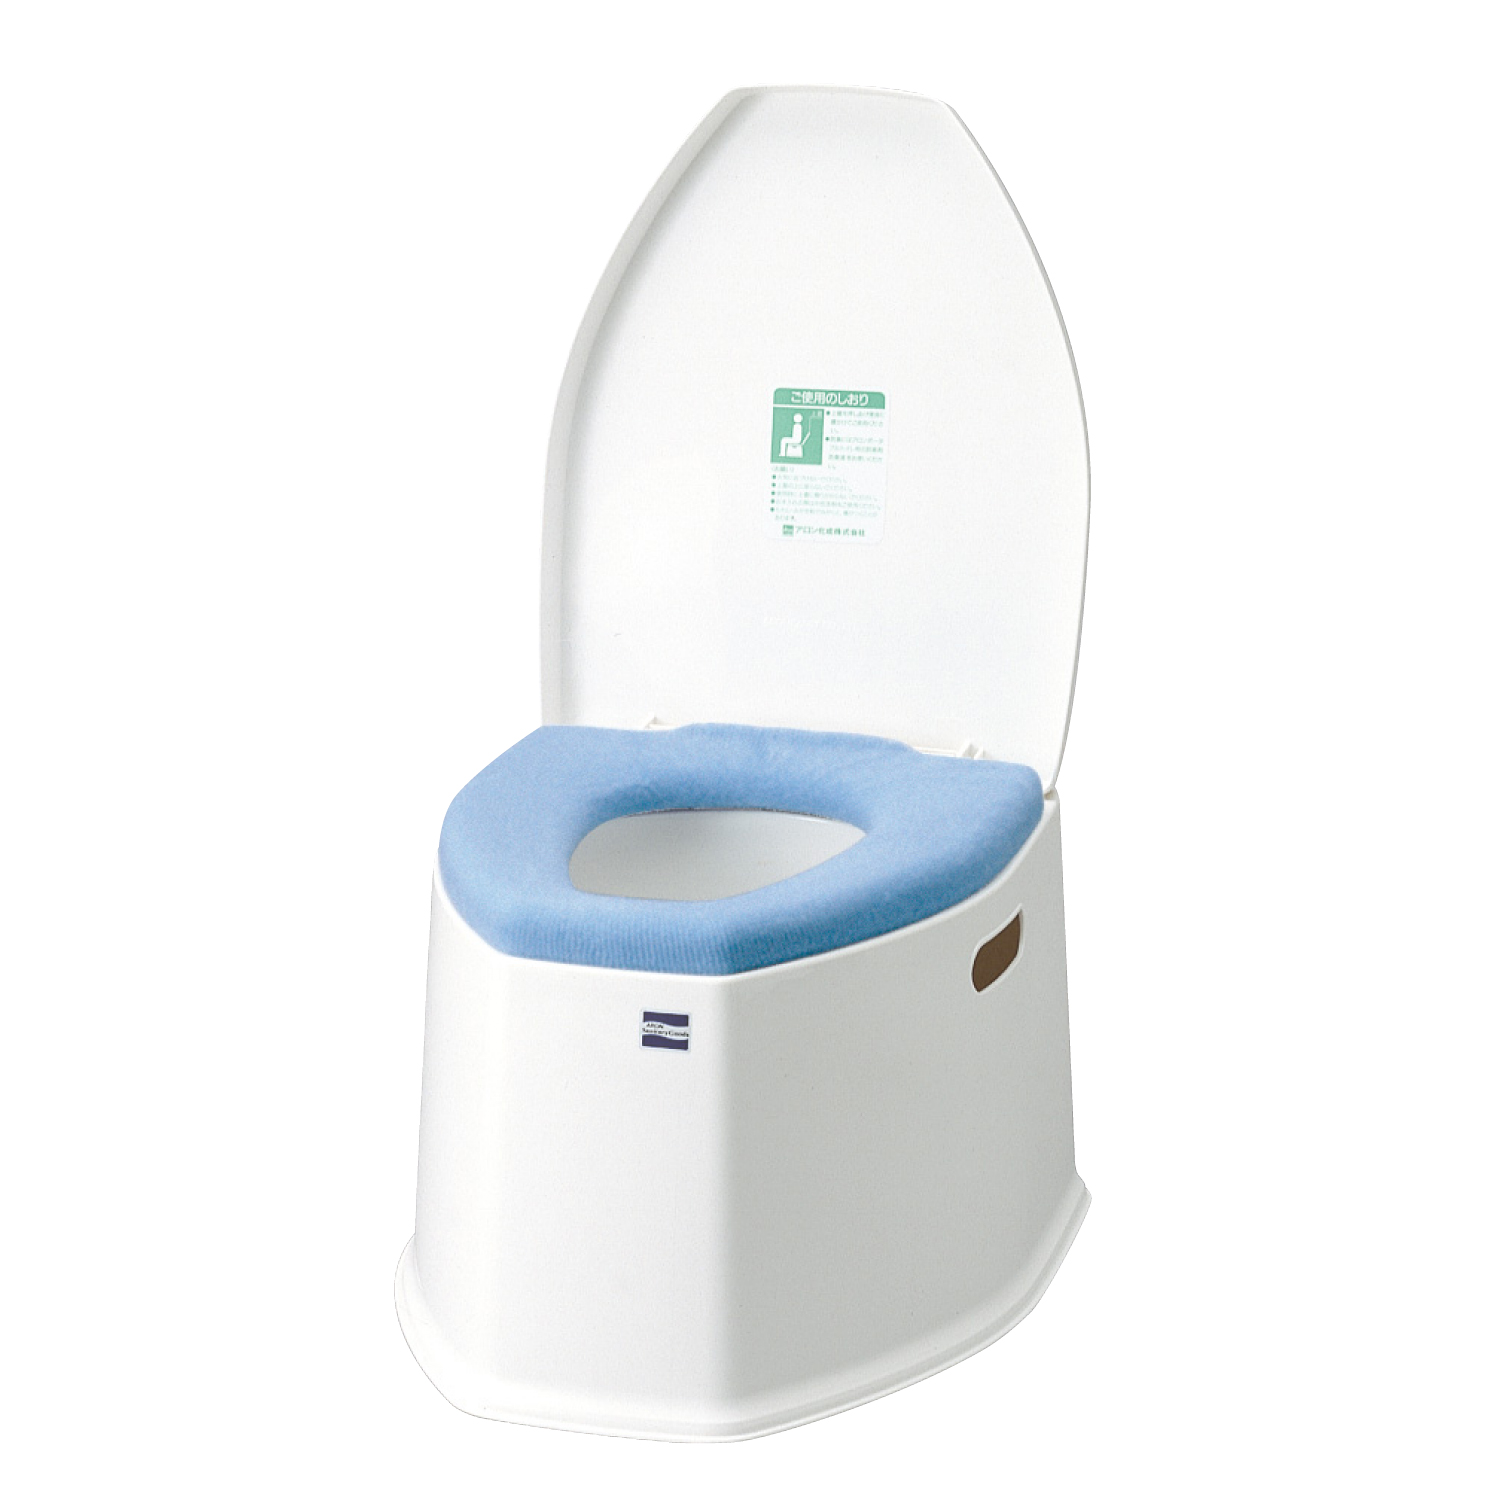 17160円 激安正規 ポータブルトイレ 木製きらく ミニでか 片付け簡単トイレ MS型 40035 普通便座 コンパクト 省スペース